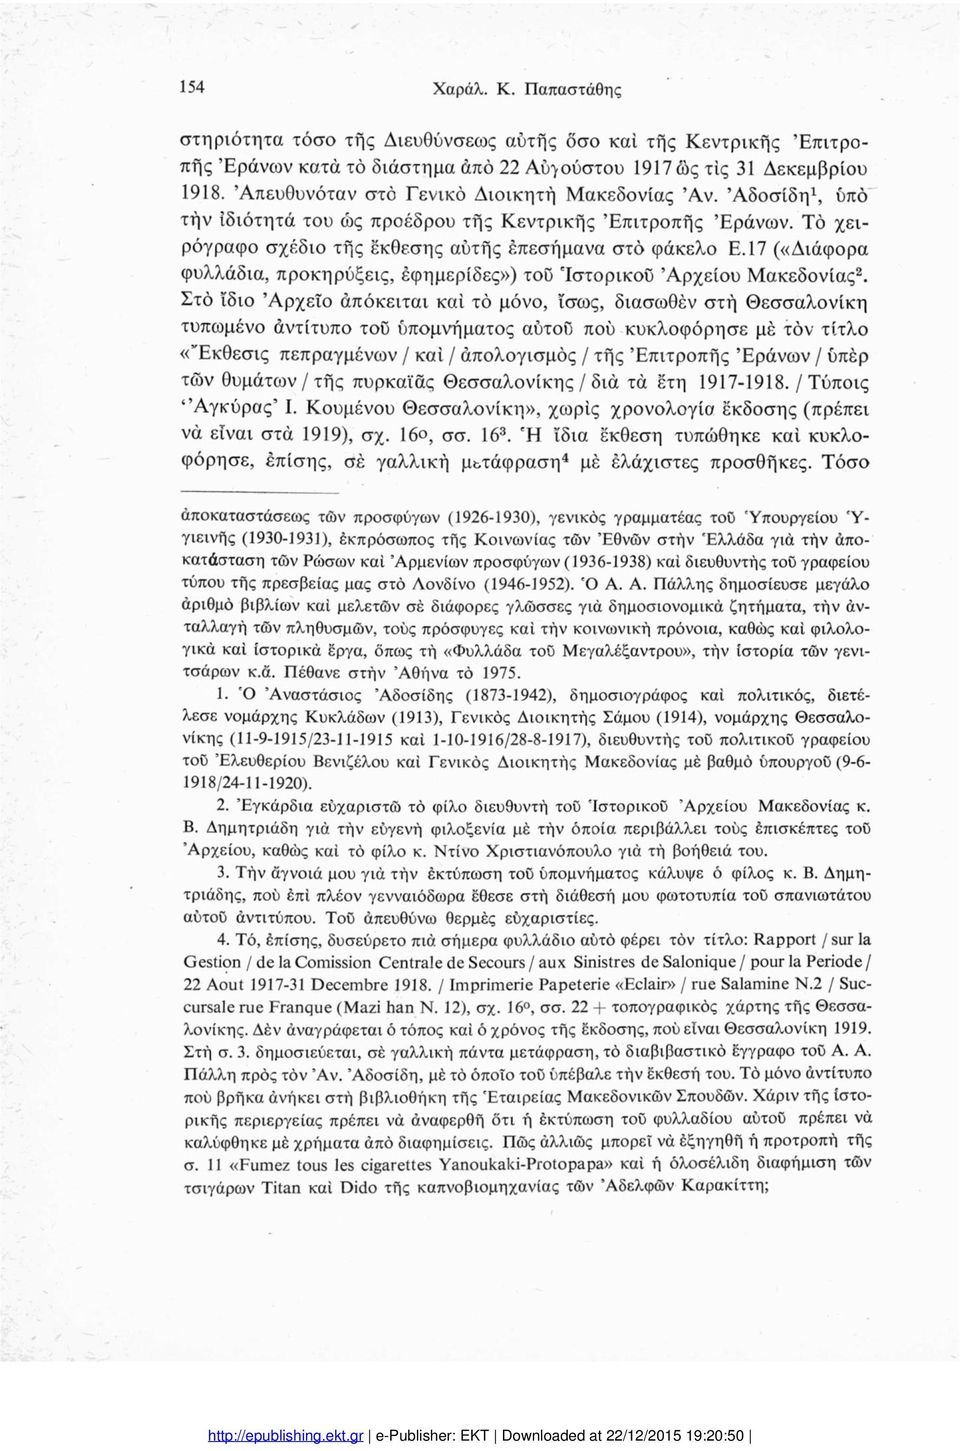 17 («Διάφορα φυλλάδια, προκηρύξεις, έφημερίδες») του 'Ιστορικού Αρχείου Μακεδονίας2.